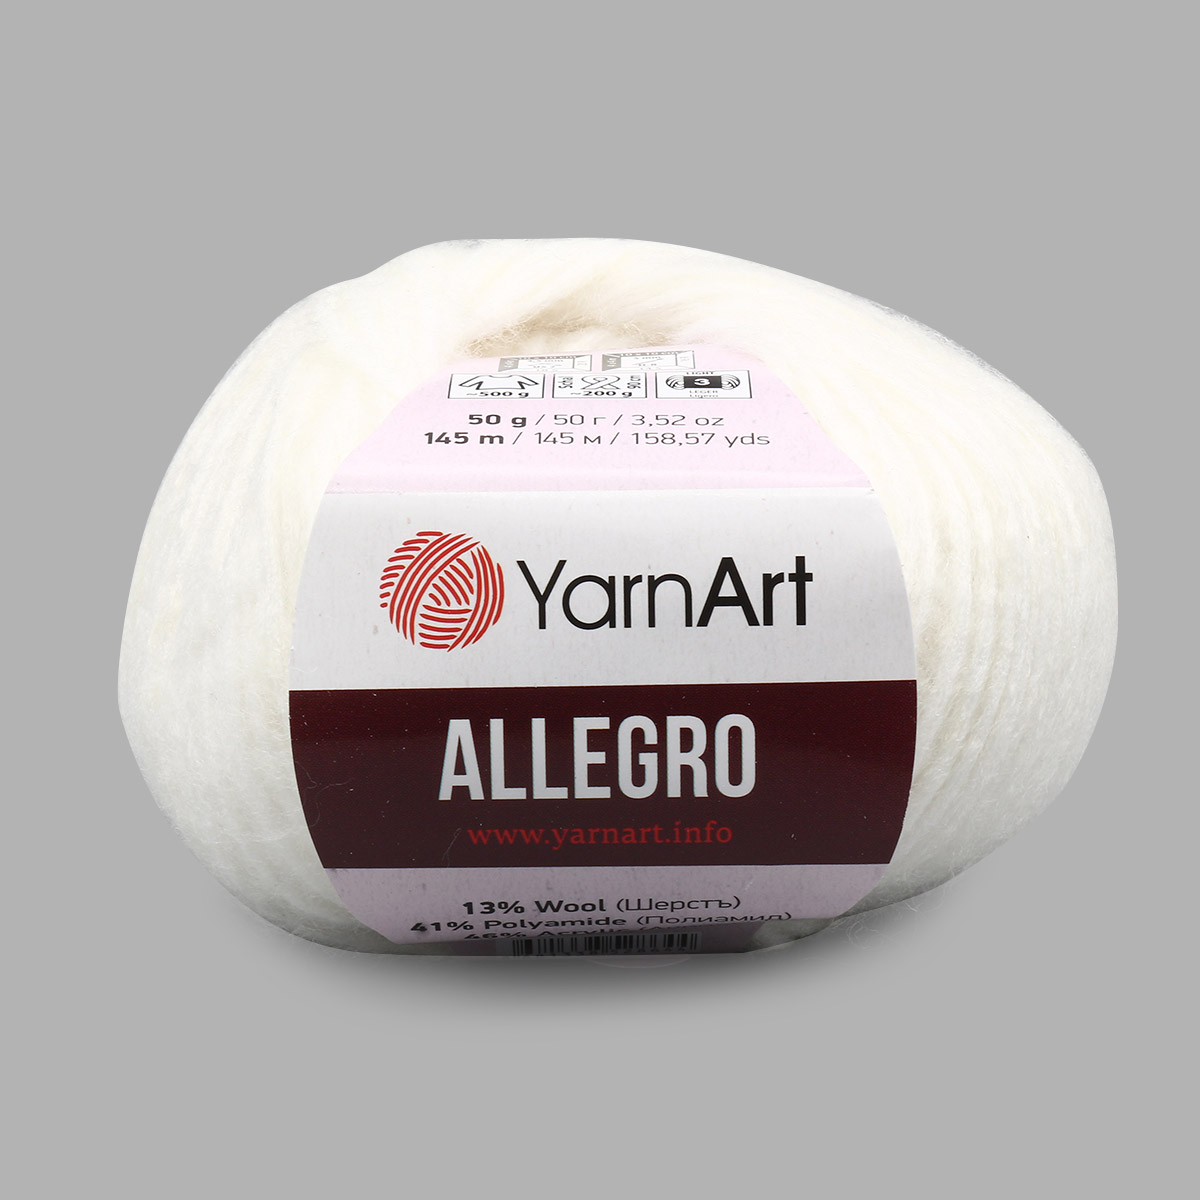 Пряжа YarnArt Allegro 46% акрил, 41% полиамид, 13% шерсть 50 г 145 м Фото 1.